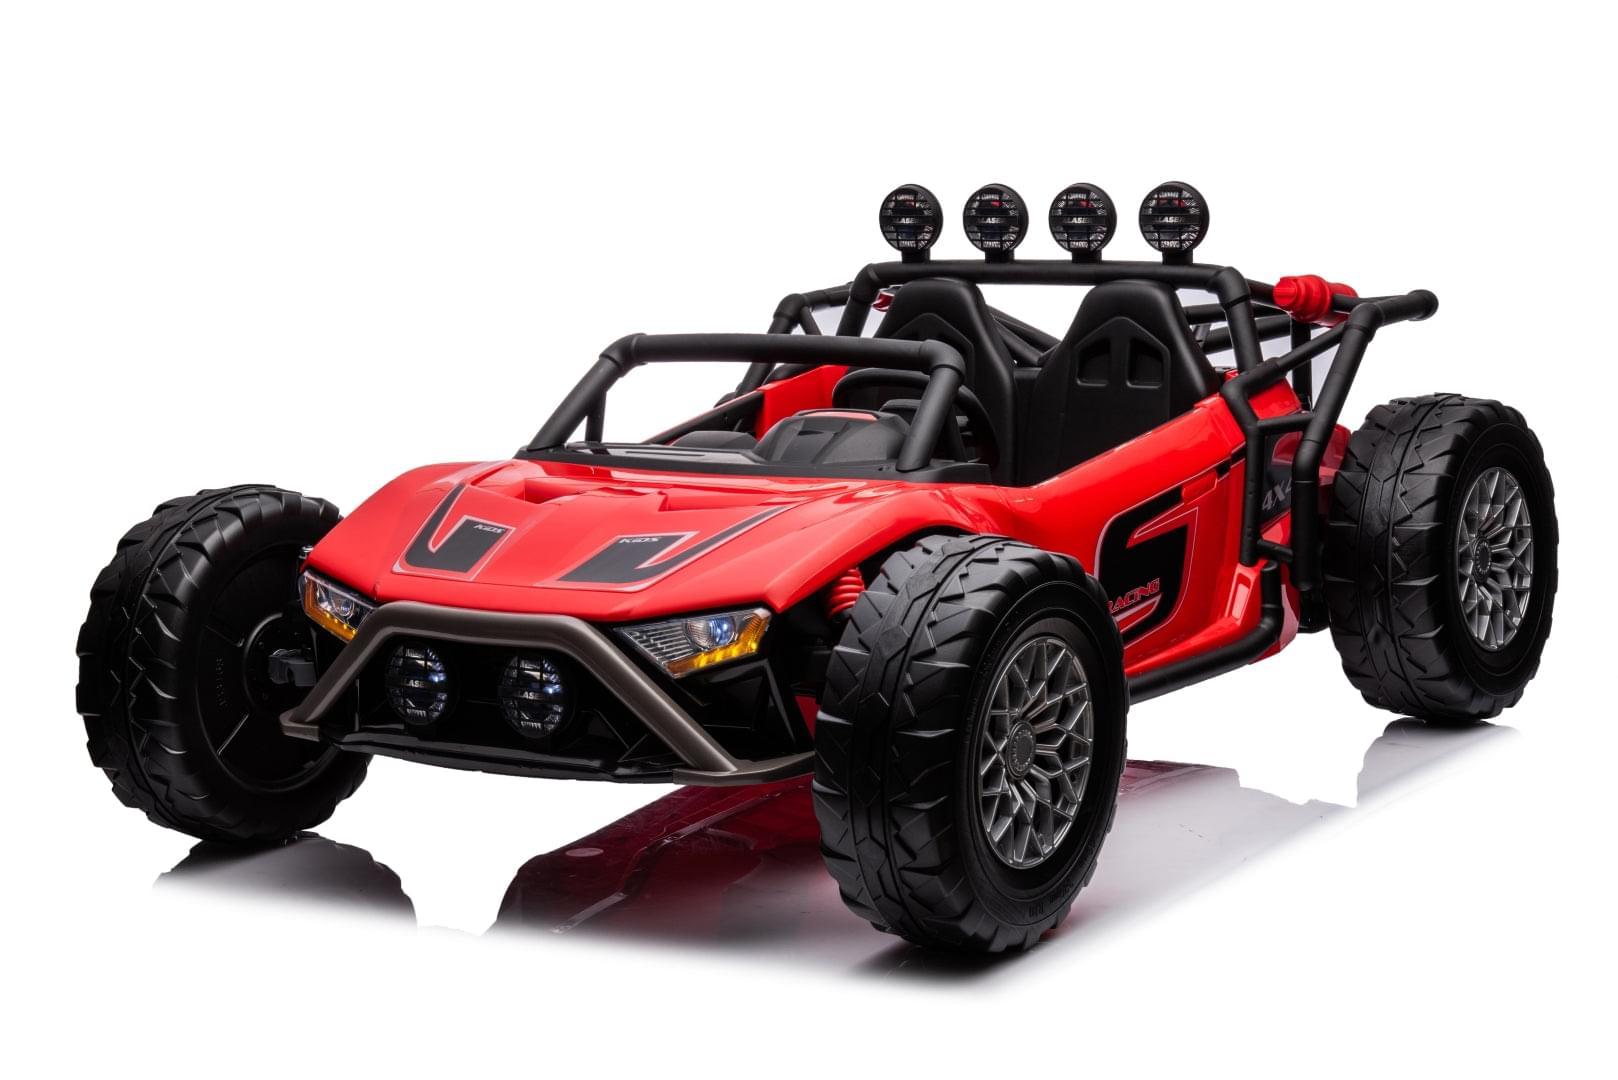 24V Freddo Monster 2 Seater Ride on for Kids - DTI Direct USA